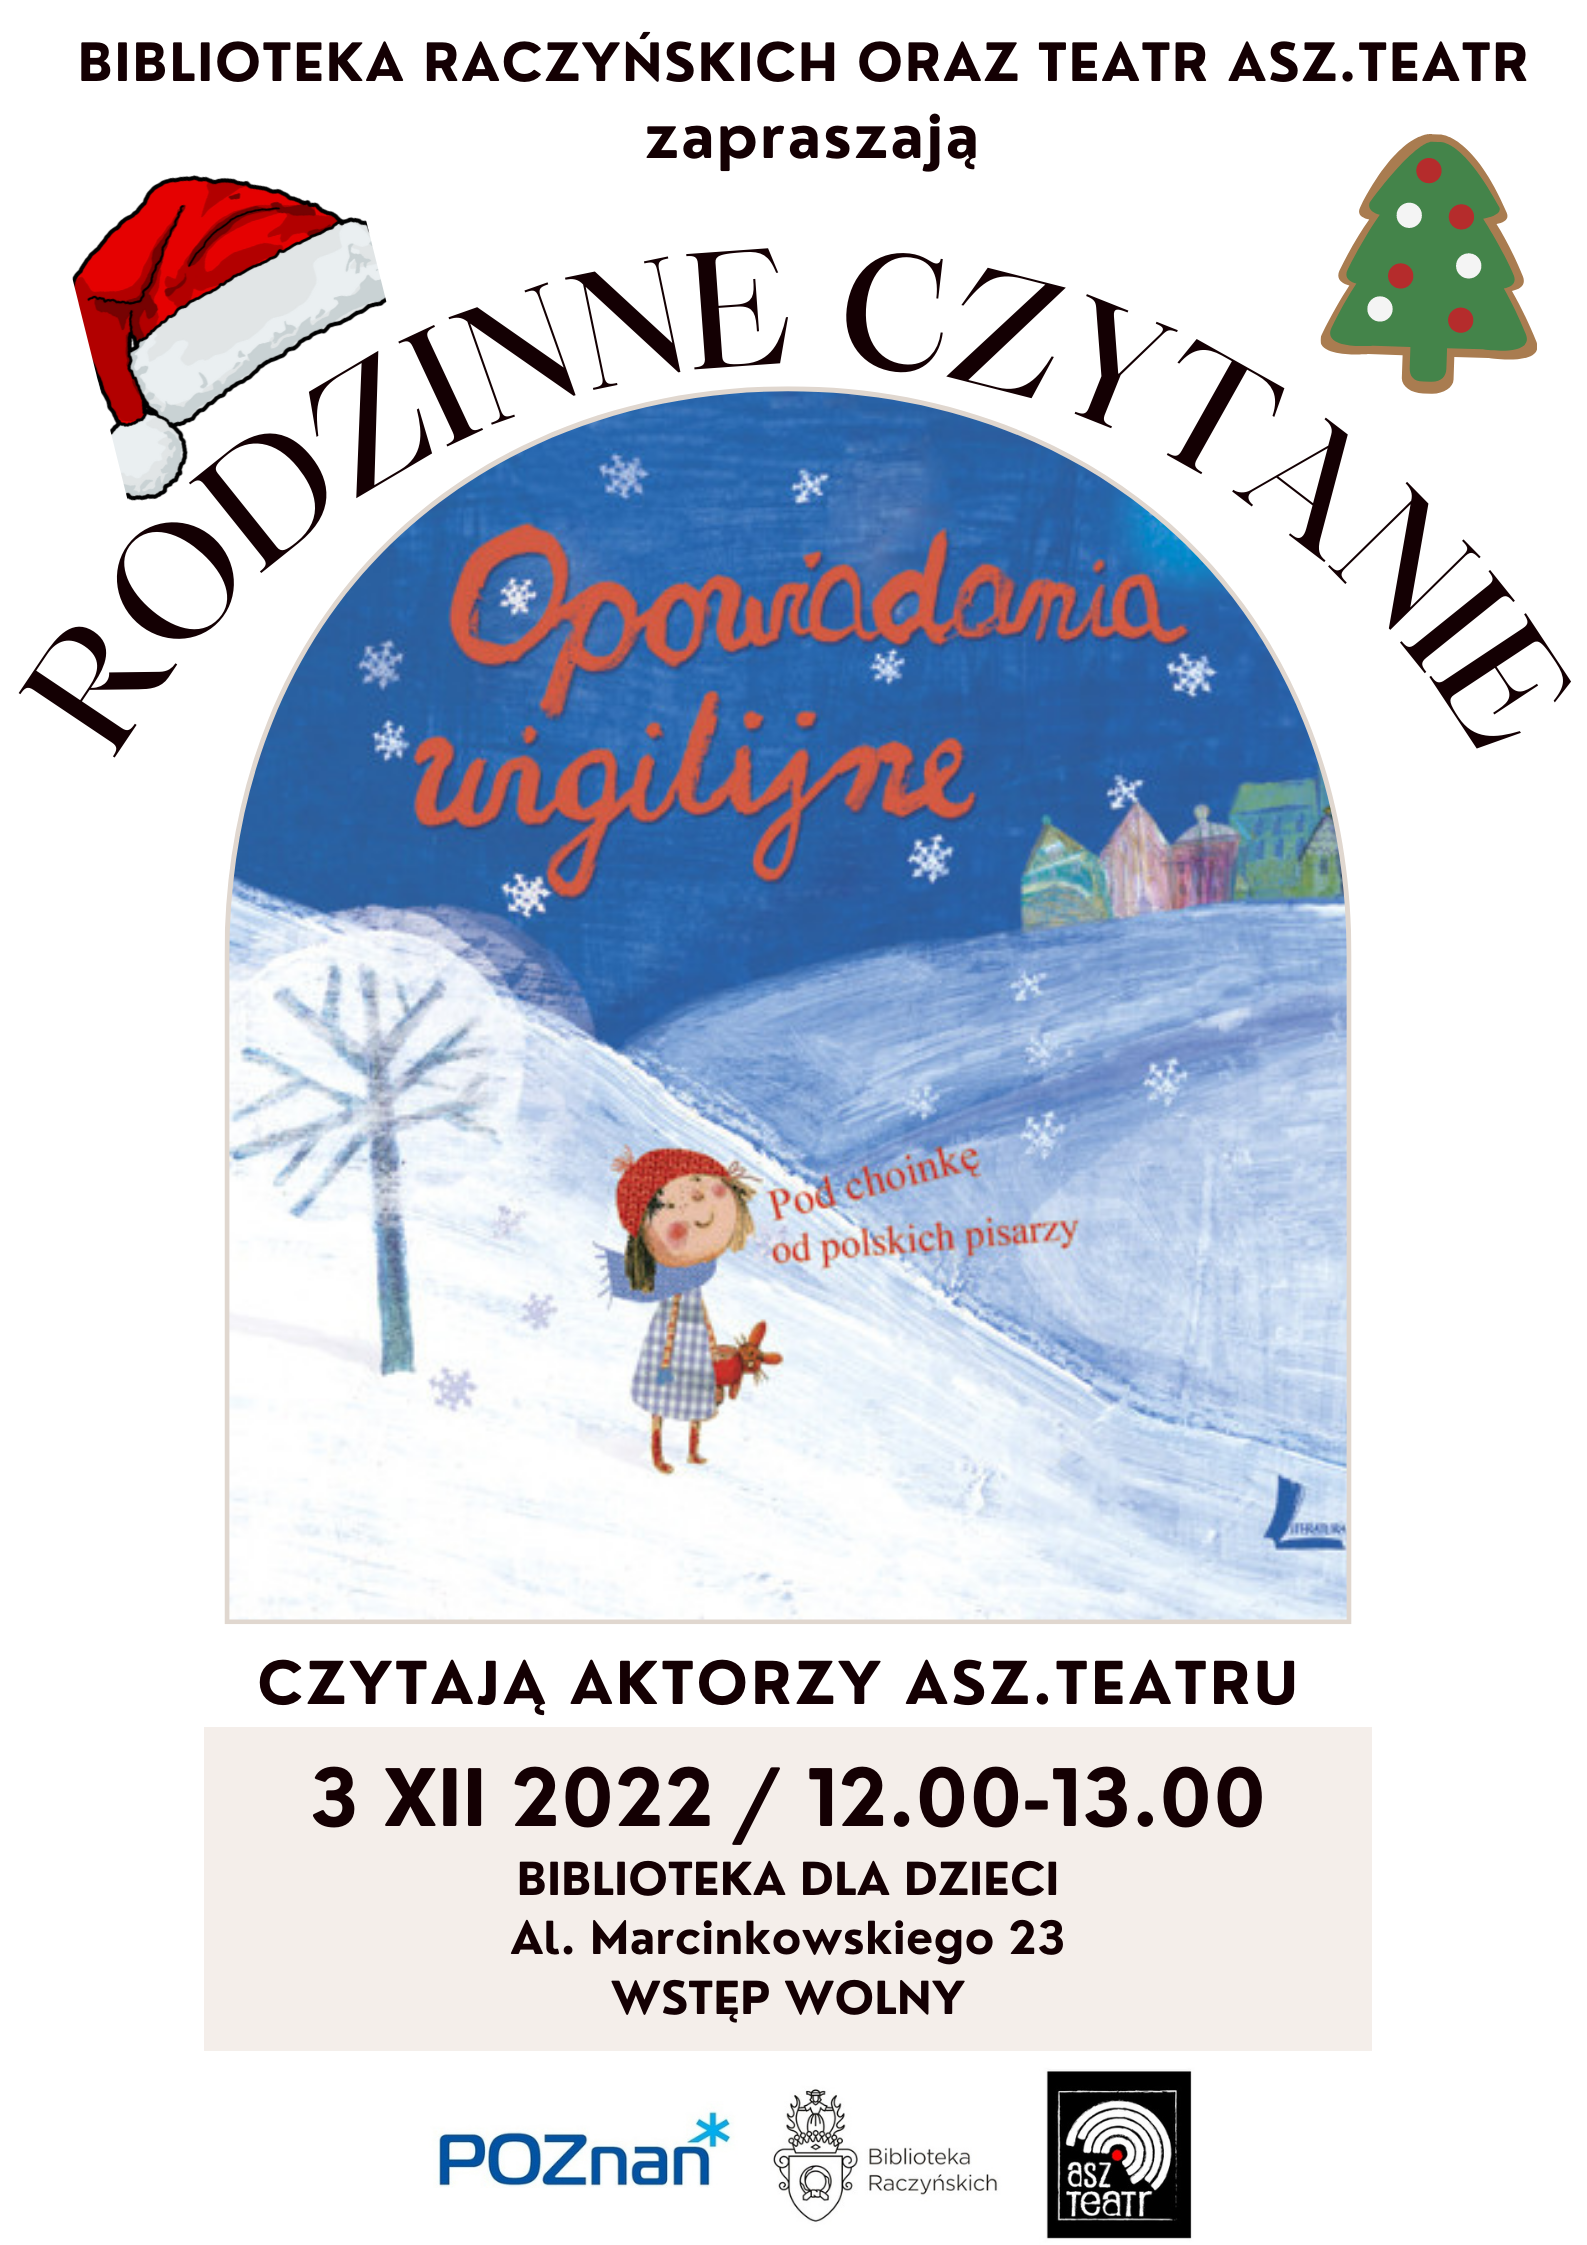 plakat wydarzenia: okładka książki, z dziewczyną na tle zaśnieżonego krajobrazu